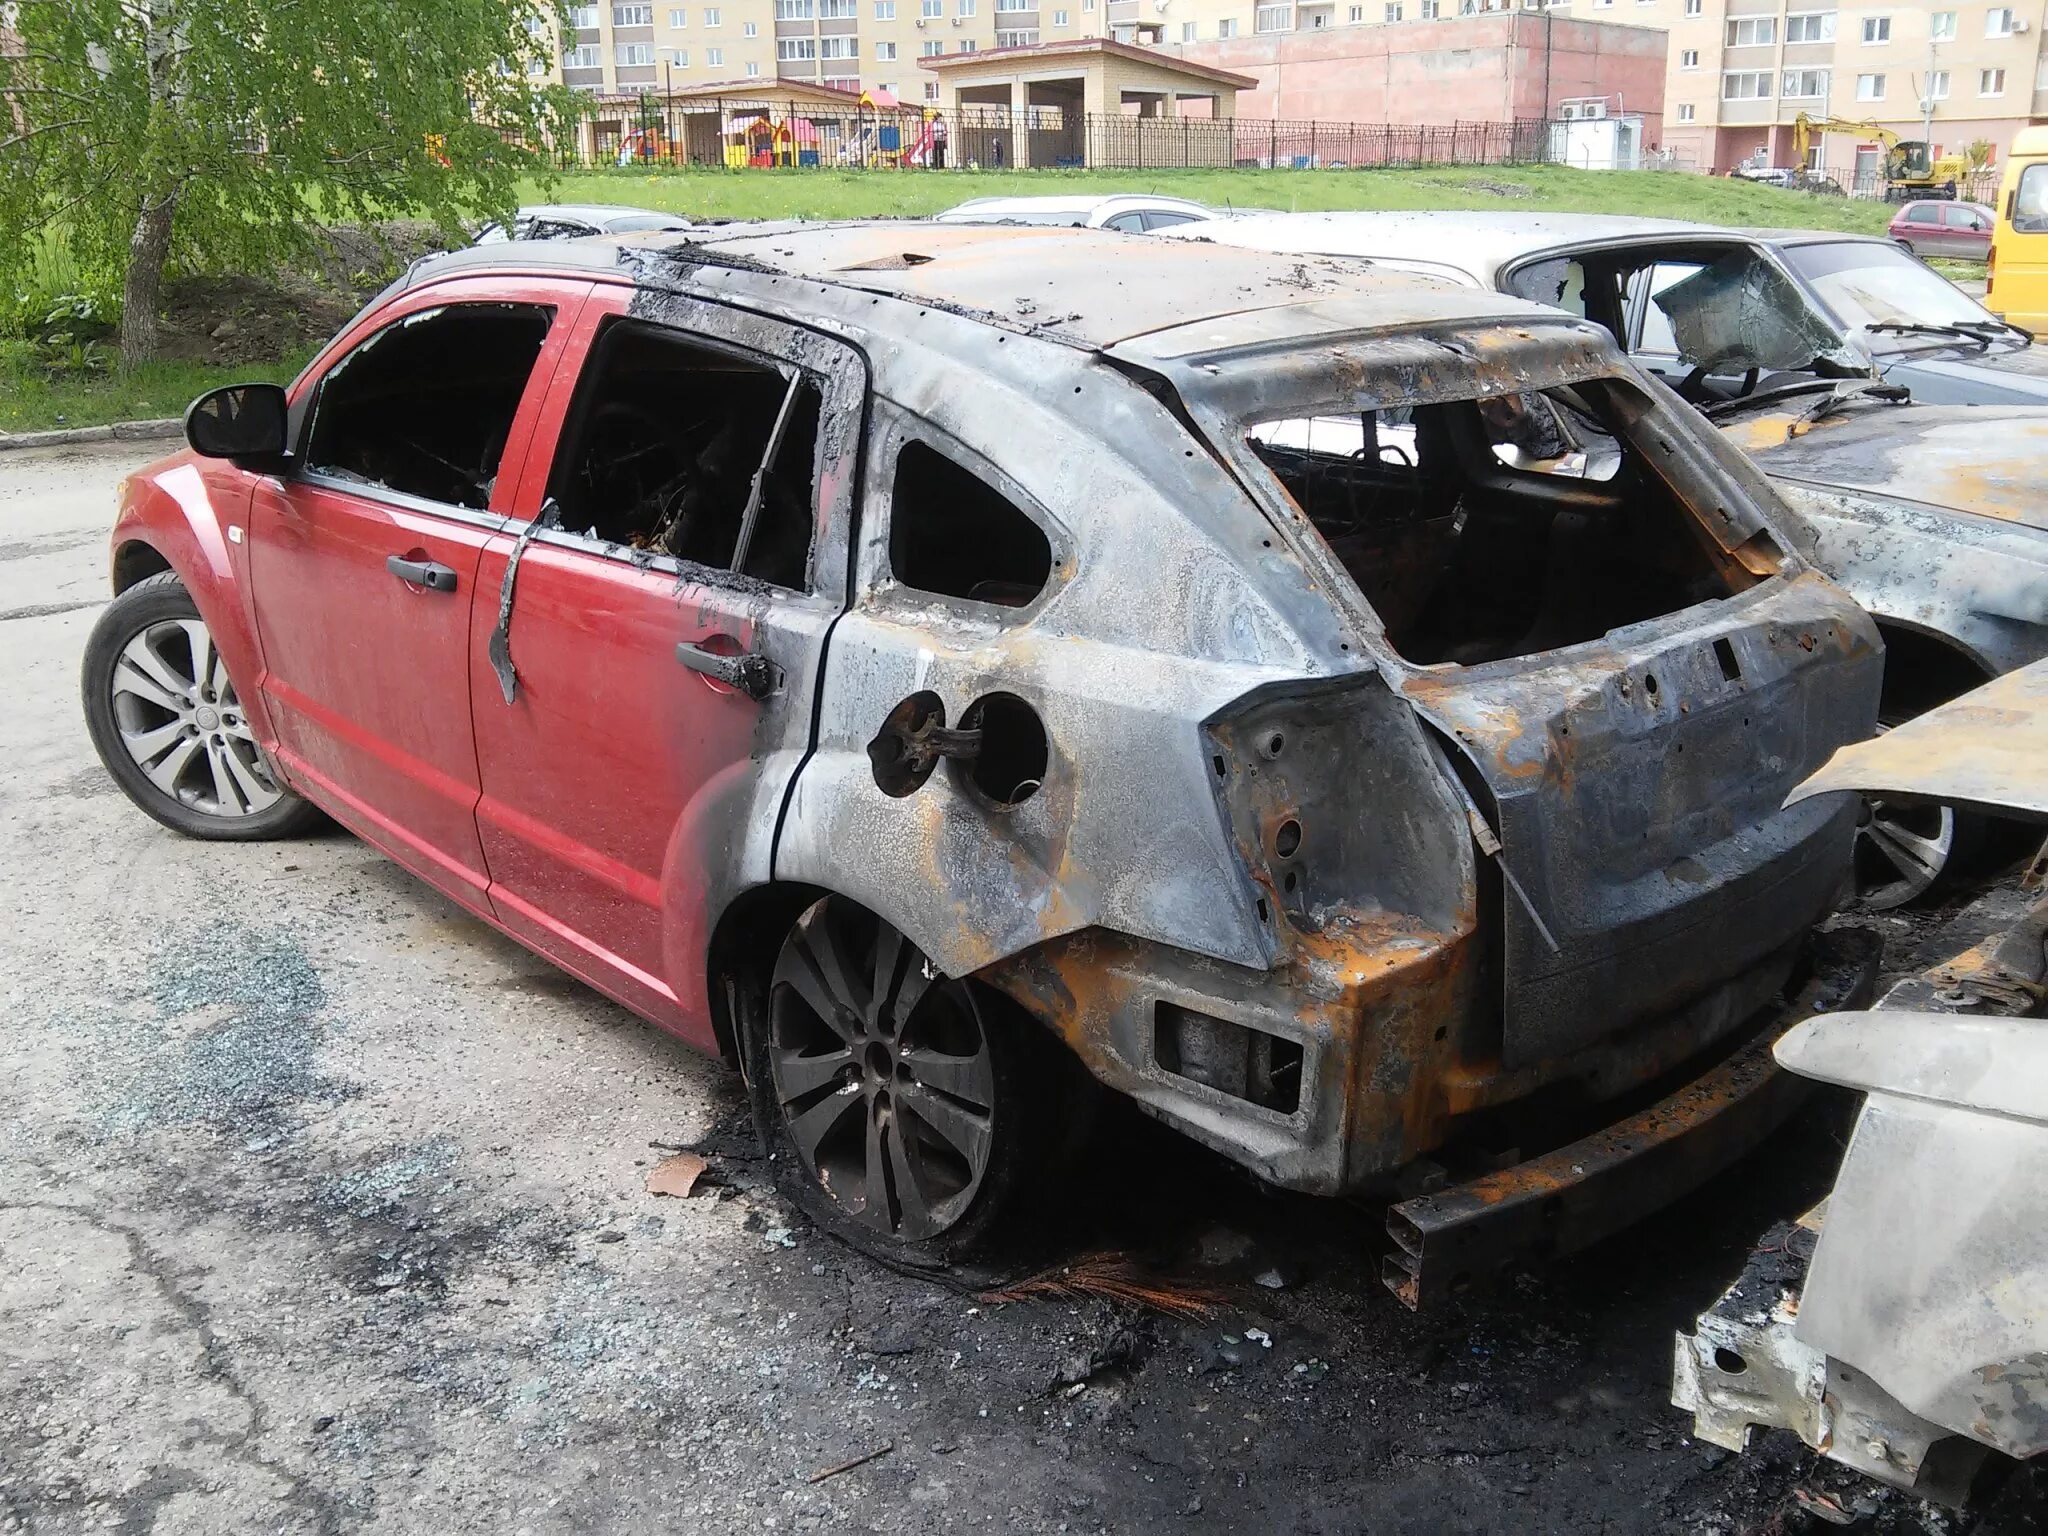 Продать сгоревшую. Автомобиль после пожара. Сломанная Разбитая машина сгоревшая.